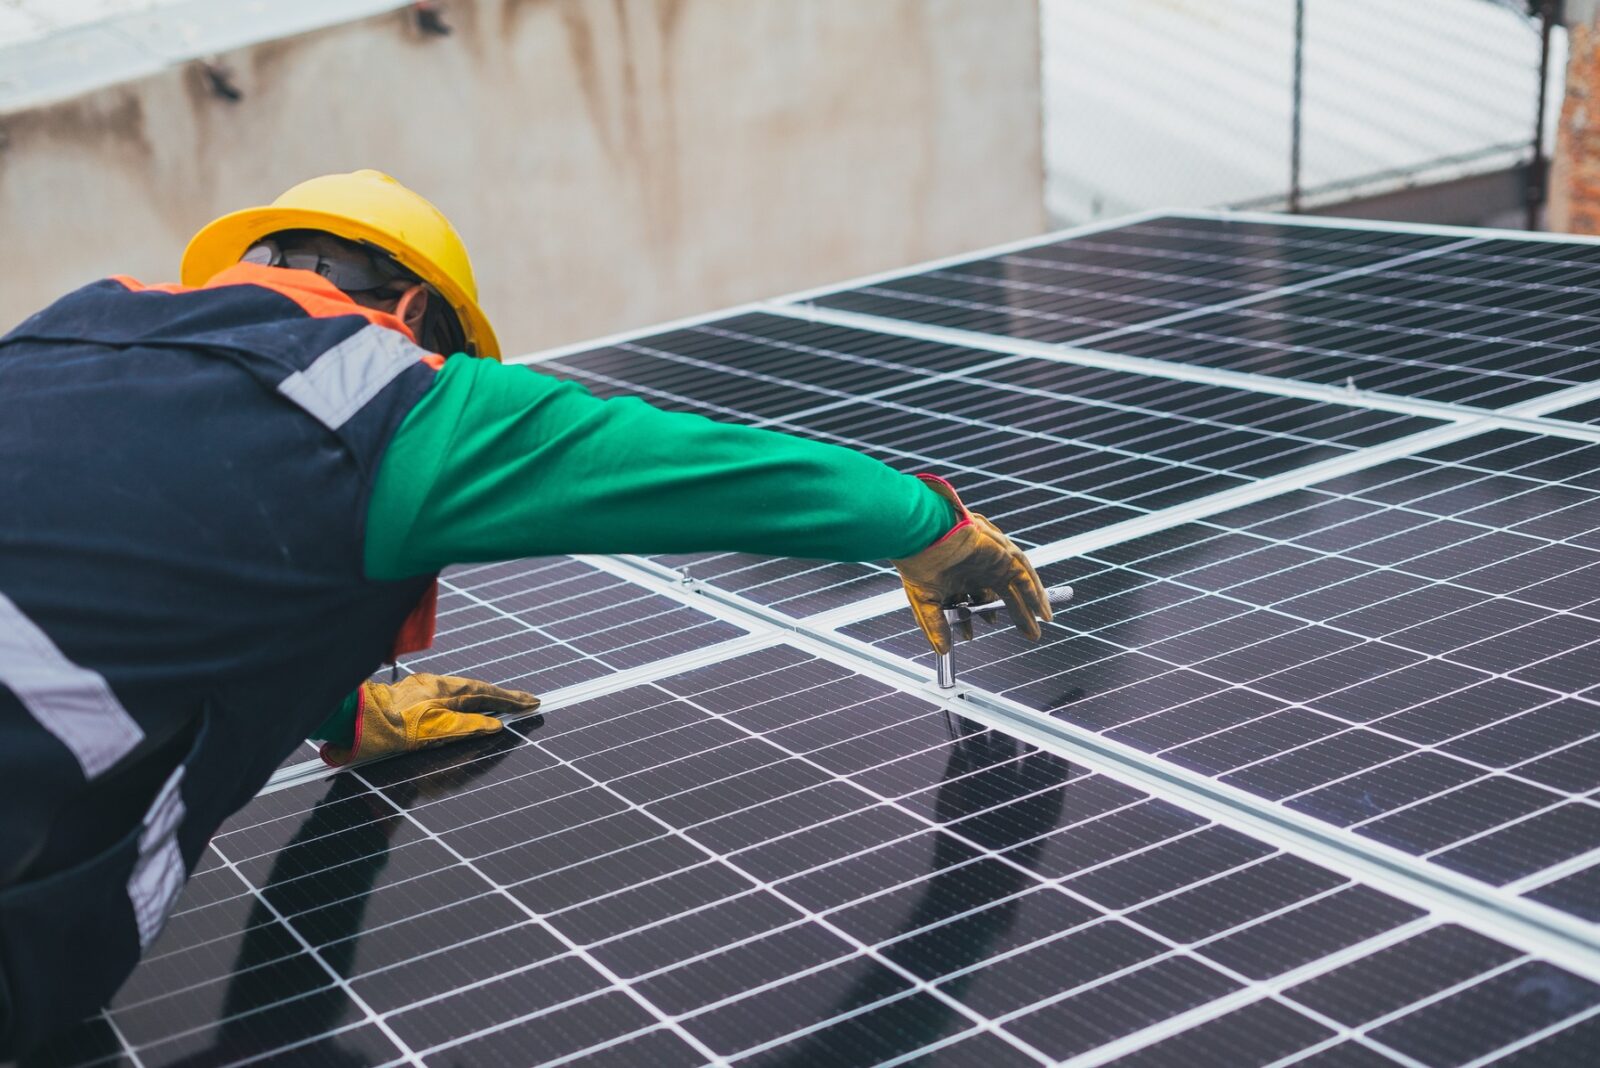 stirisurse.ro programele casa verde fotovoltaice 2023 oportunitati si provocari pentru prosumatorii romani